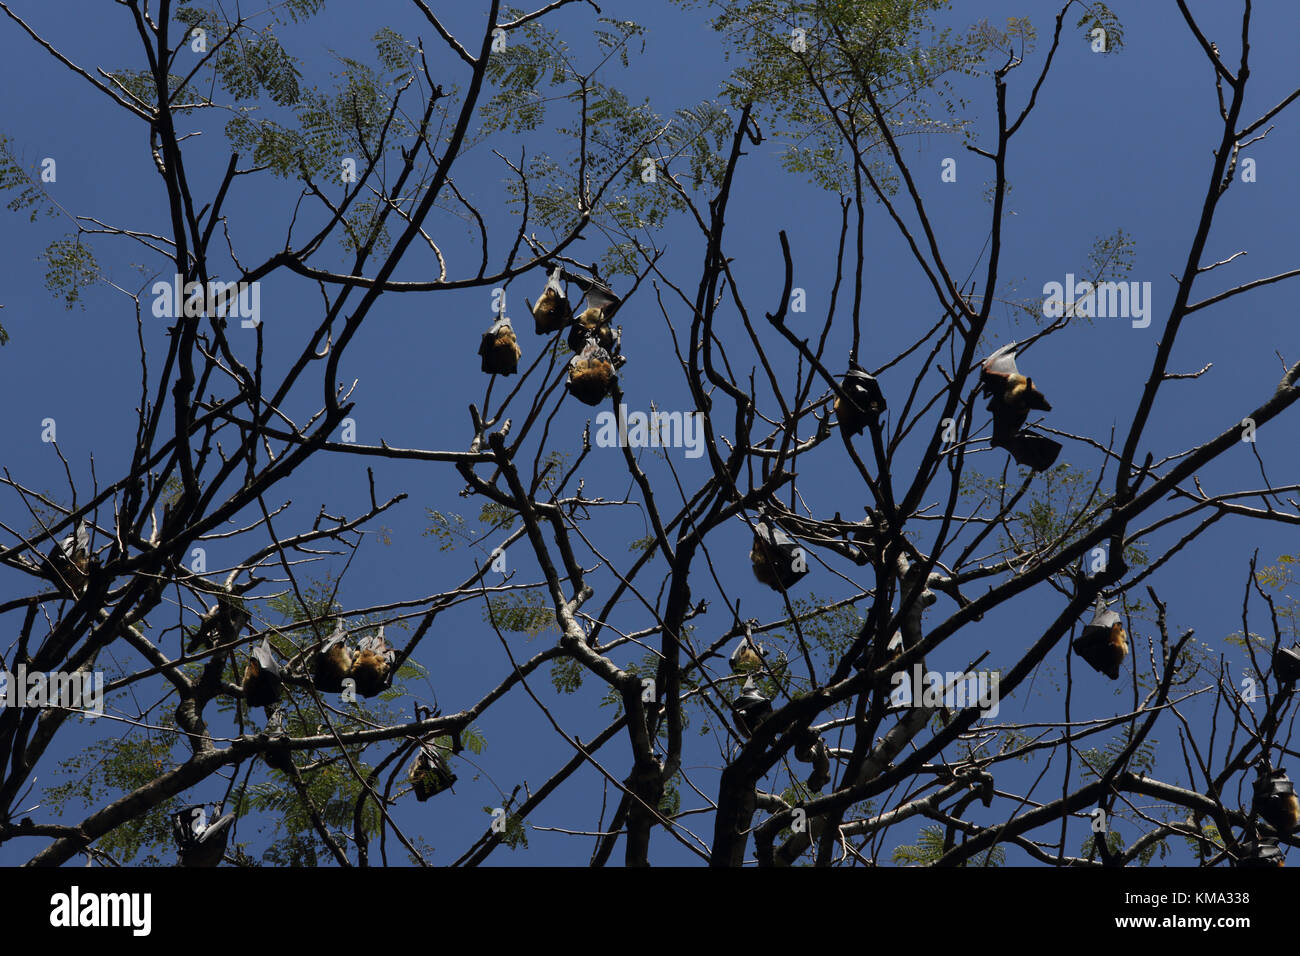 Peradeniya  Kandy Central Province Sri Lanka Peradeniya Royal Botanical Gardens Colony of Fruit Bats In Trees Stock Photo